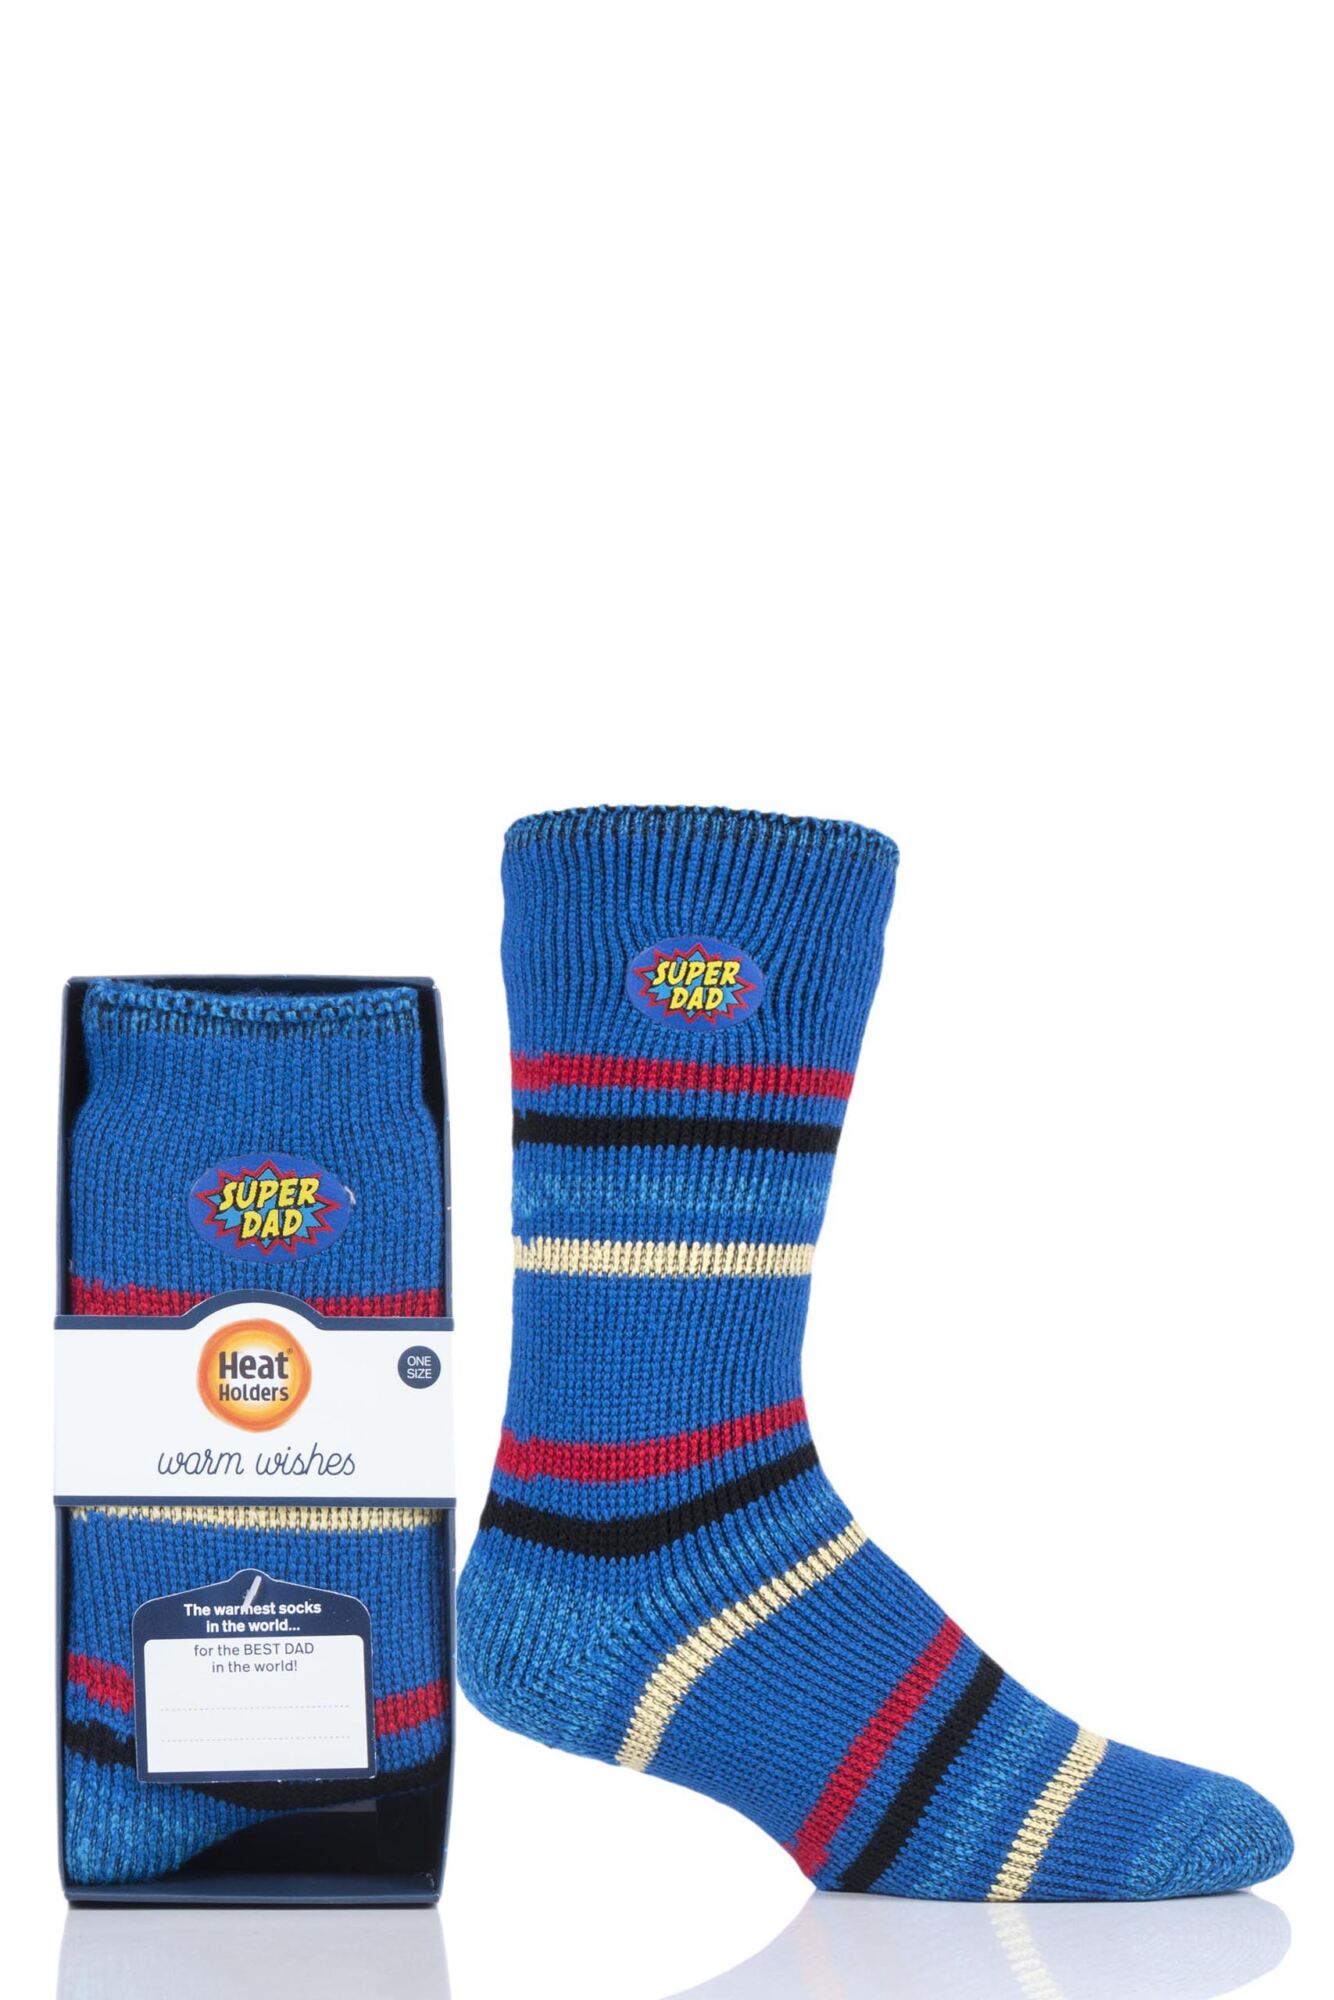 1 Pair Gift Boxed Socks Men's - Heat Holders